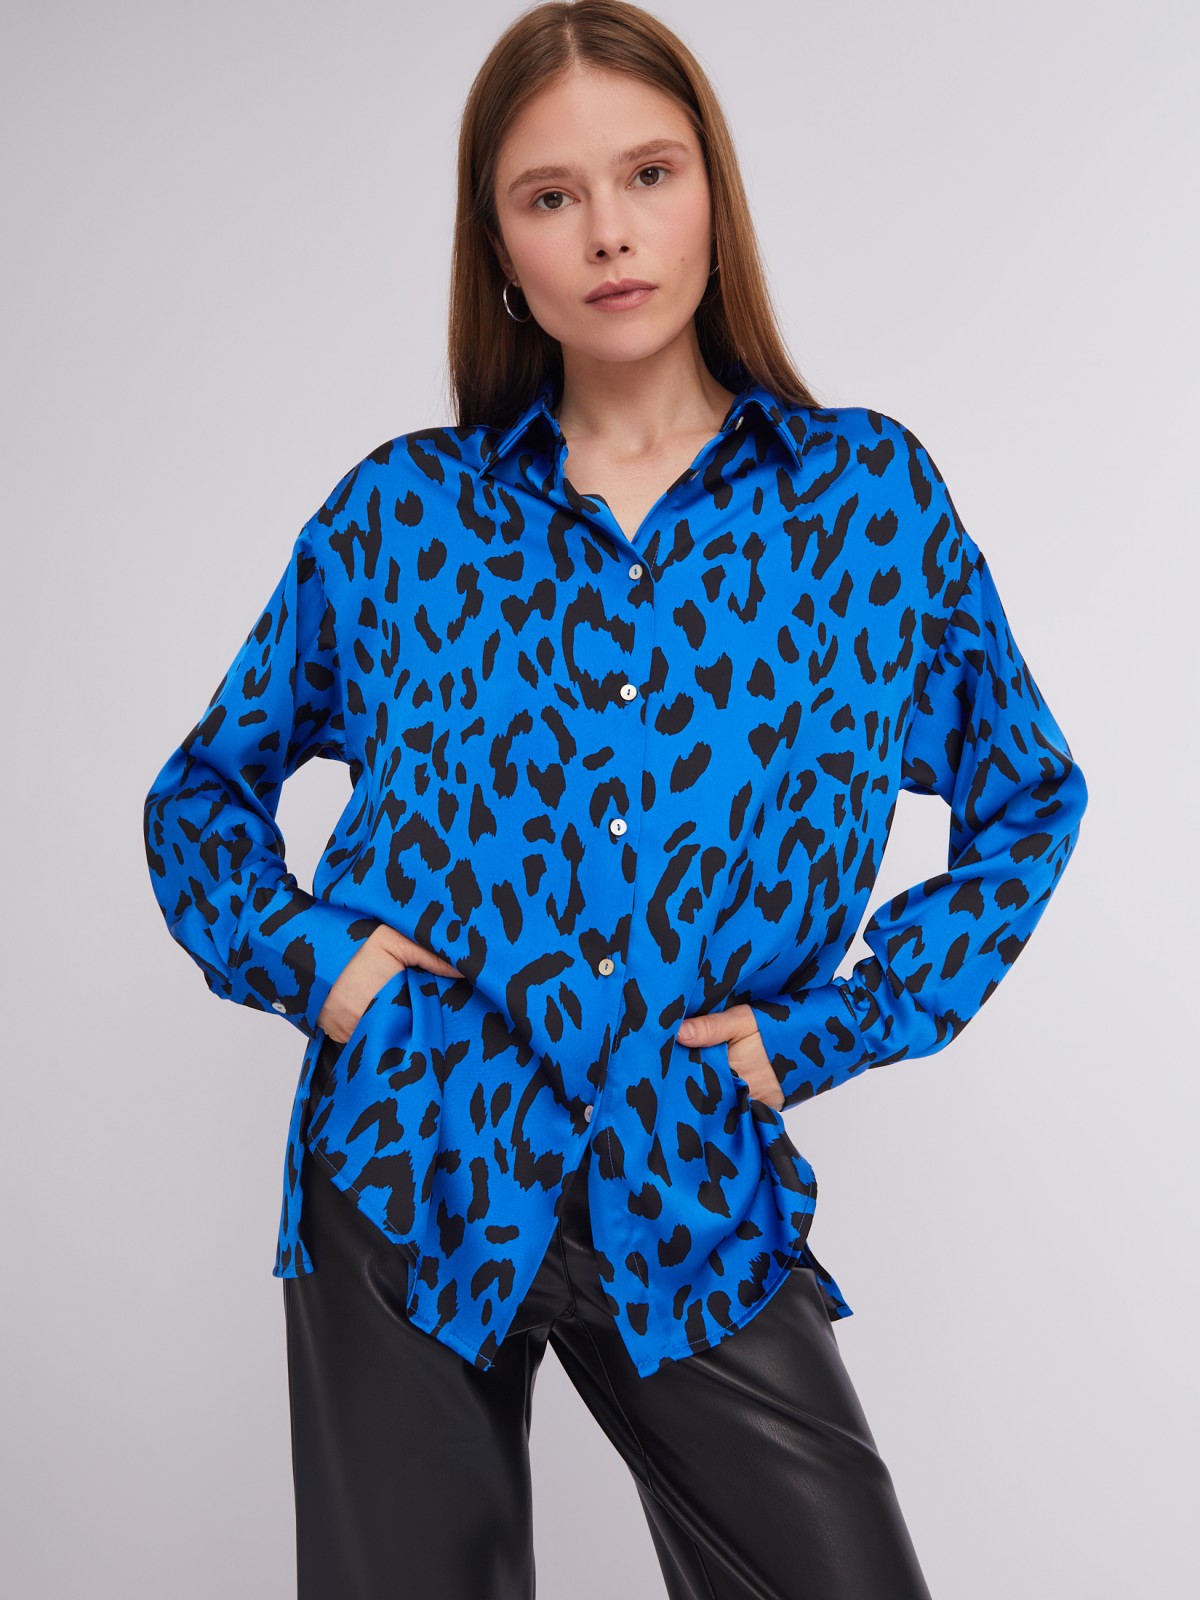 Атласная рубашка оверсайз силуэта с леопардовым принтом